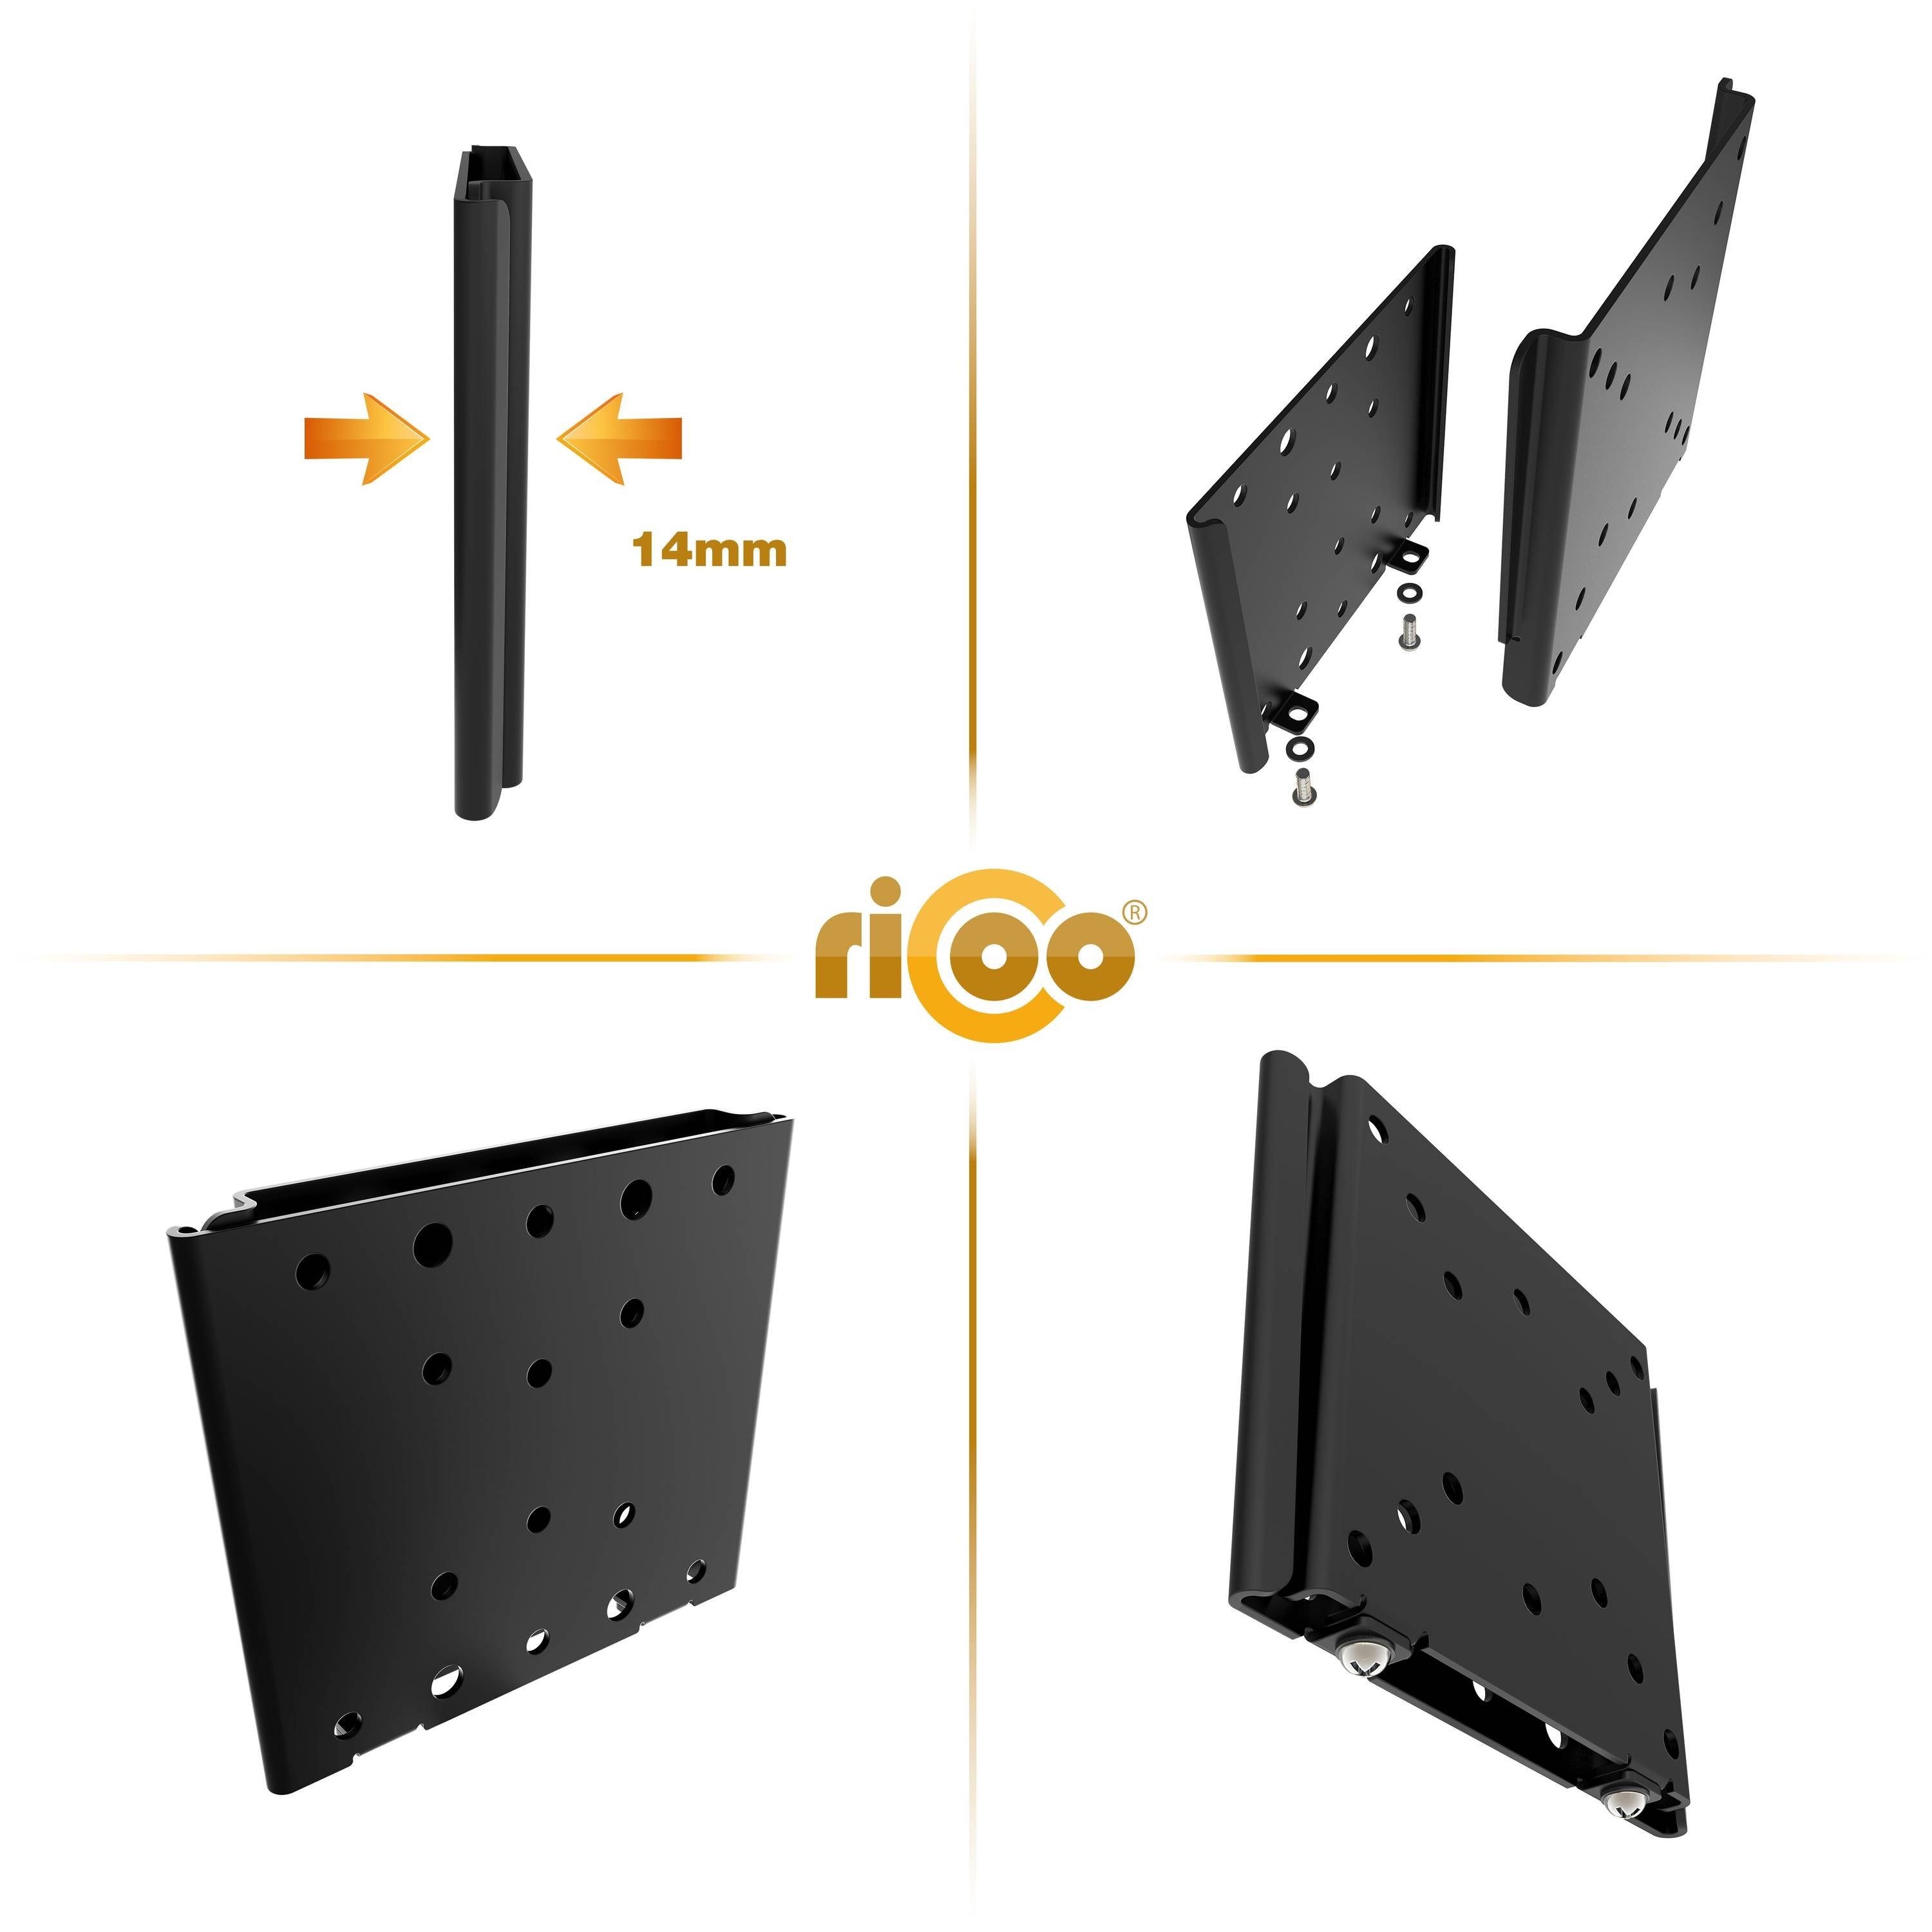 RICOO F0311 TV-Wandhalterung, (bis 32 100 Wand Fernseher VESA Zoll, flach x universal curved 100) Monitor Halterung